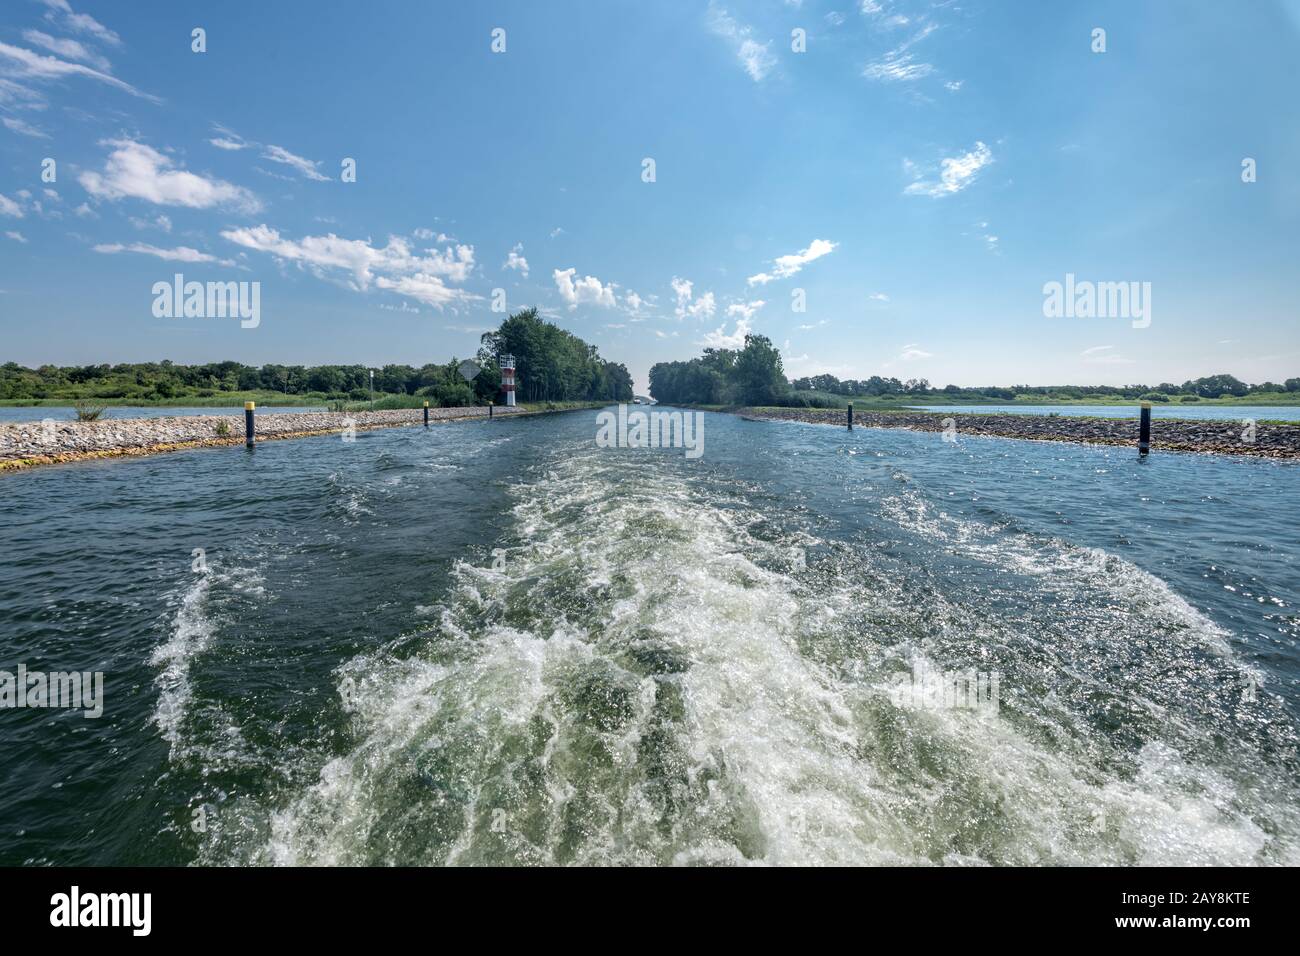 Eje de impulsión de un barco en el río que entra en un lago Foto de stock